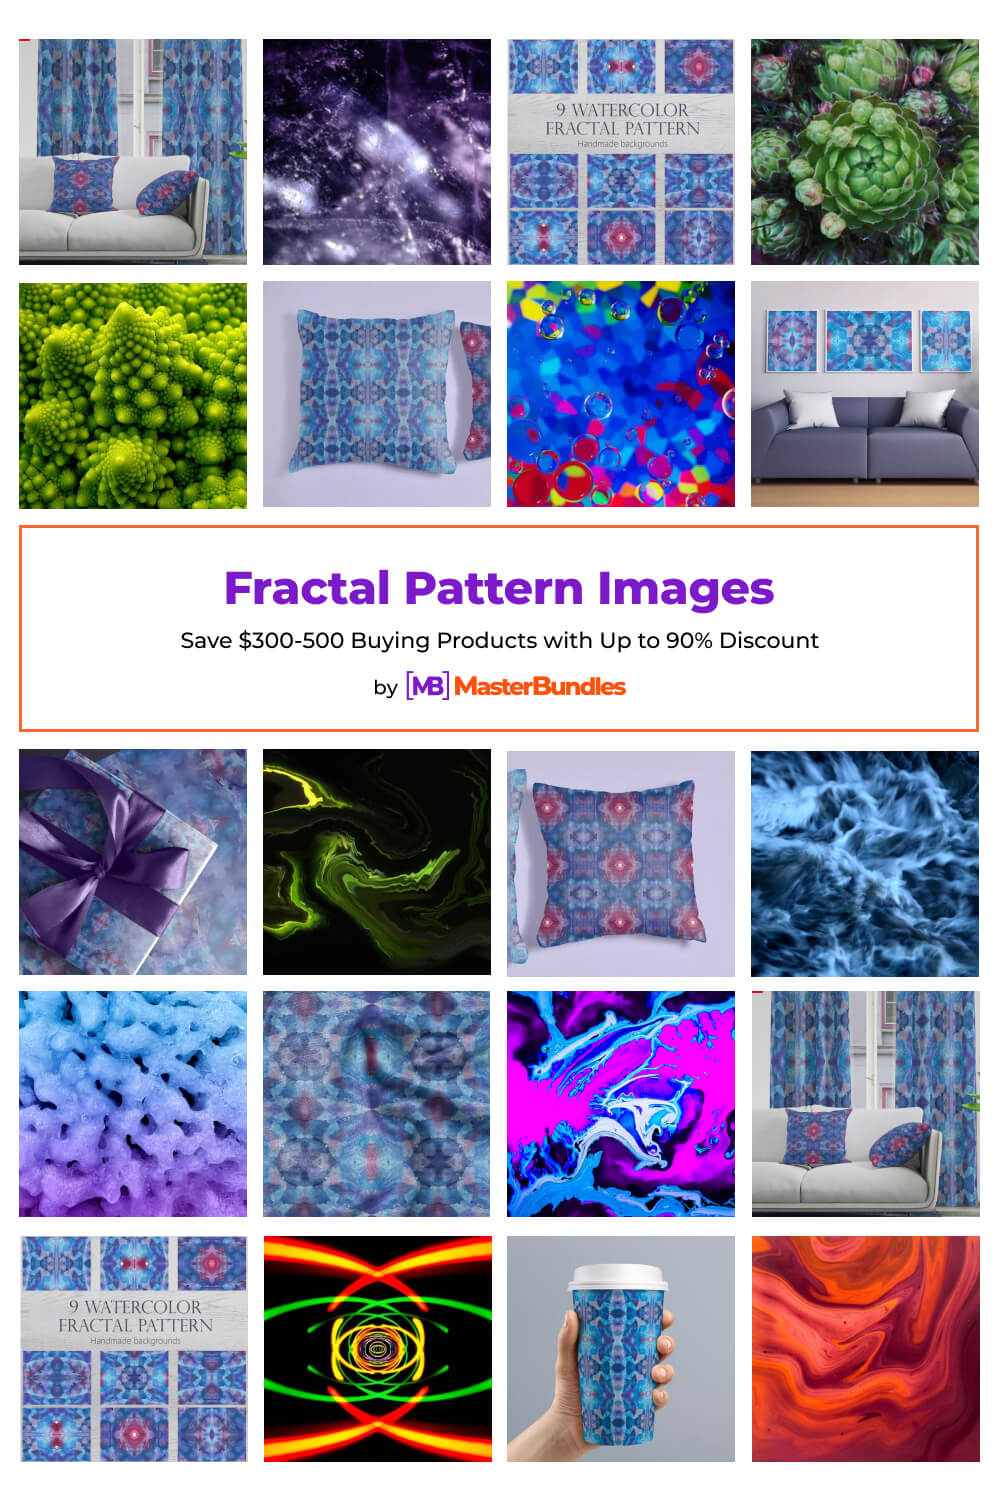 fractal pattern images pinterest image.